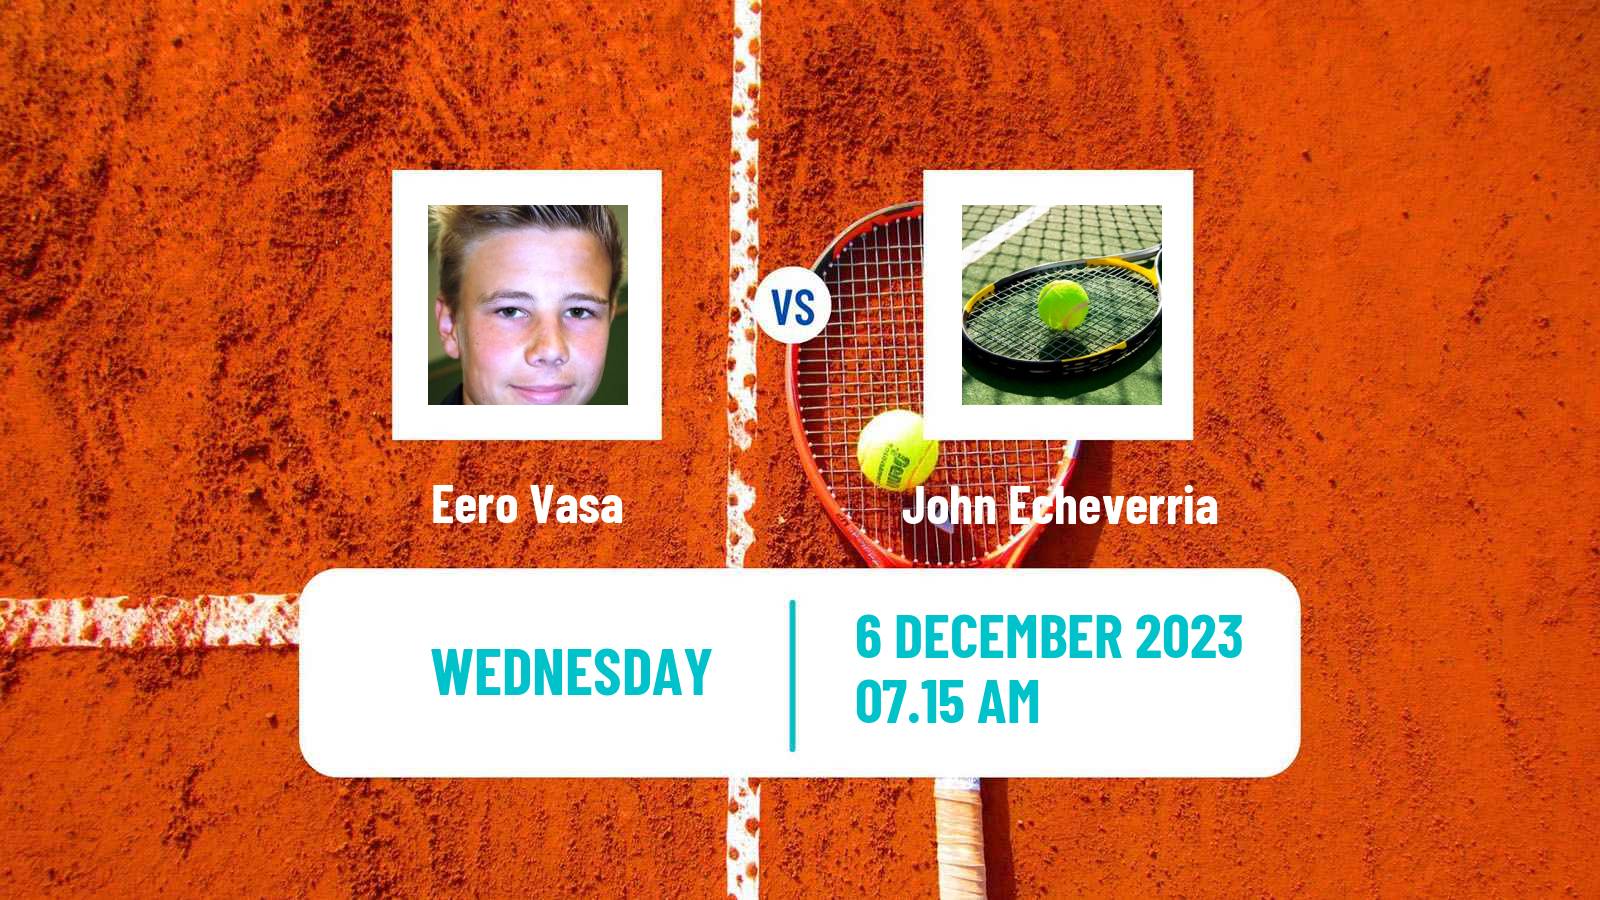 Tennis ITF M15 Madrid 3 Men Eero Vasa - John Echeverria